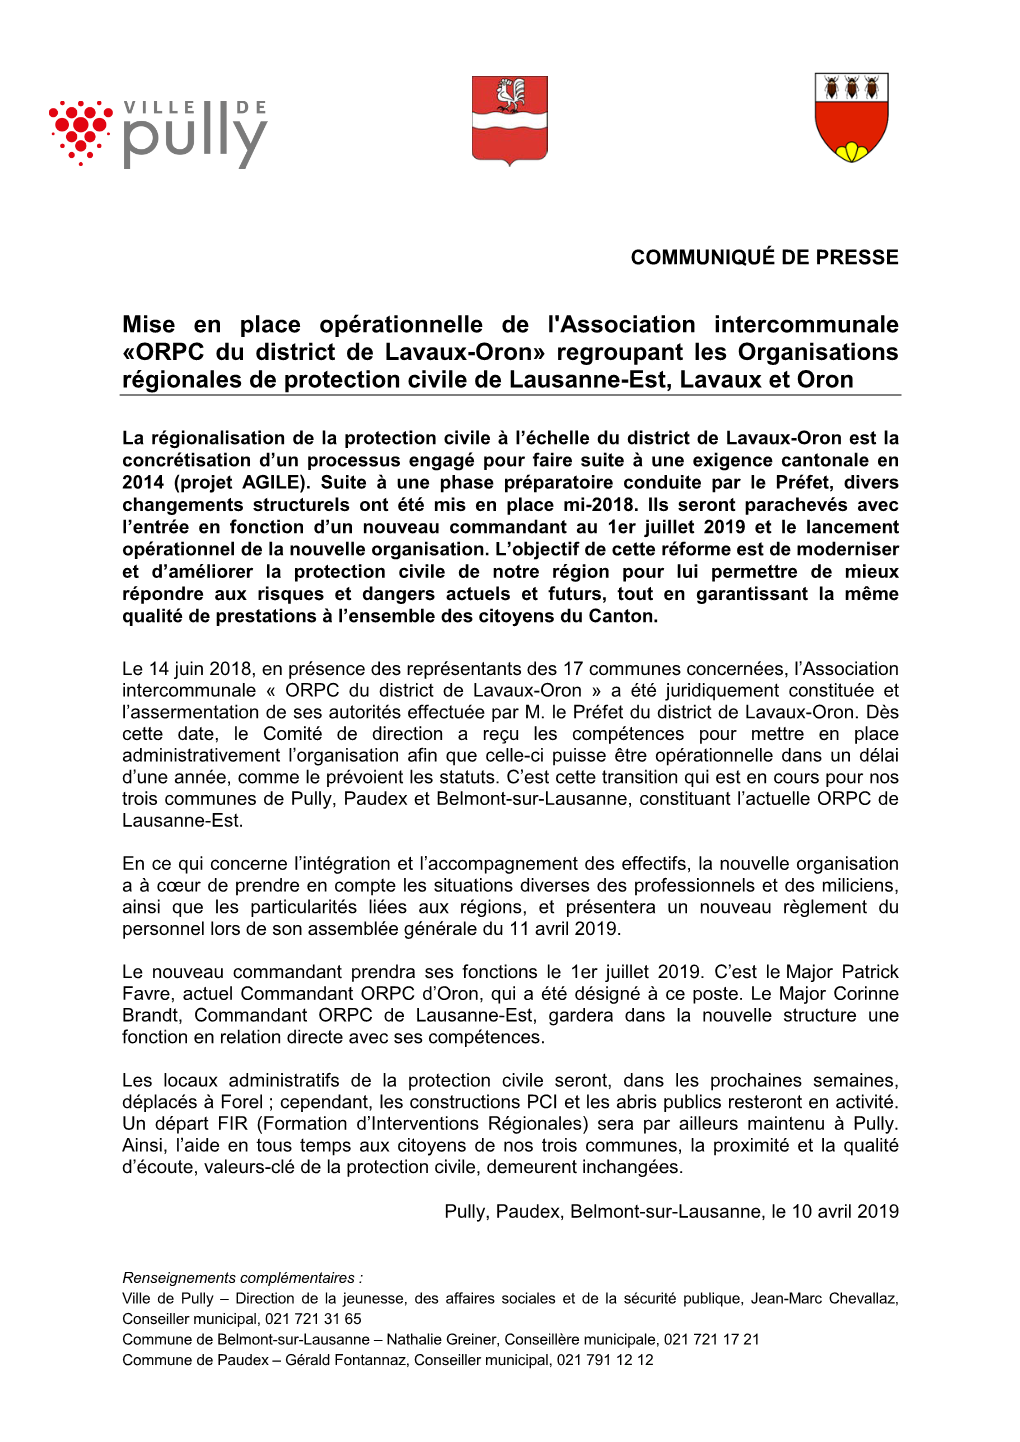 ORPC Du District De Lavaux-Oron» Regroupant Les Organisations Régionales De Protection Civile De Lausanne-Est, Lavaux Et Oron